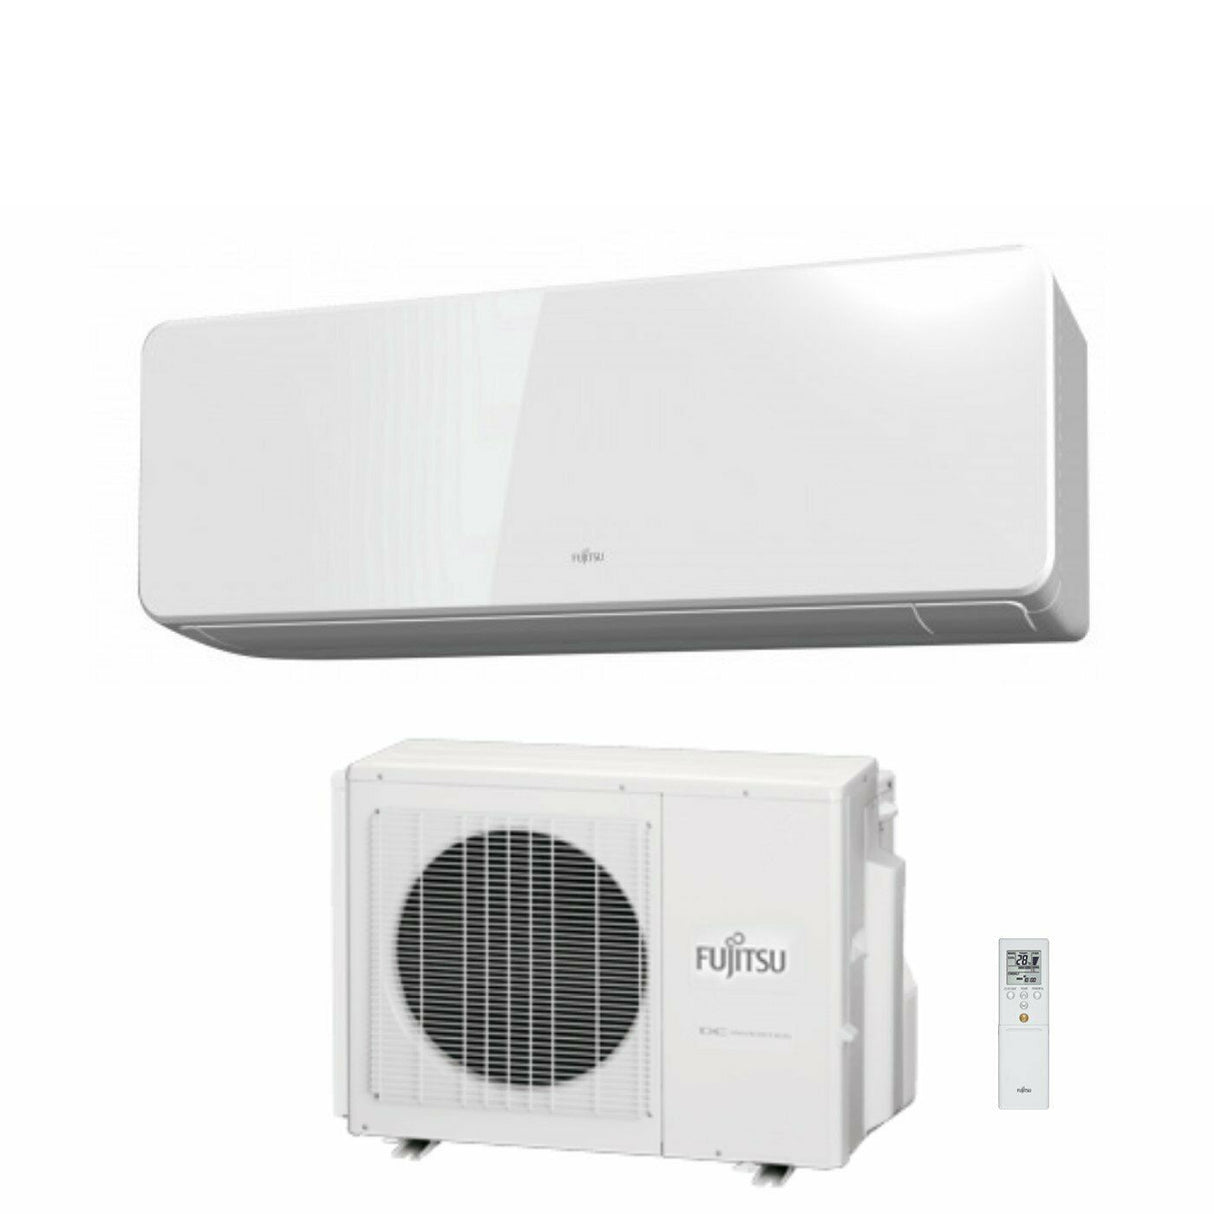 immagine-1-fujitsu-climatizzatore-condizionatore-fujitsu-inverter-serie-kg-12000-btu-asyg12kgte-wifi-integrato